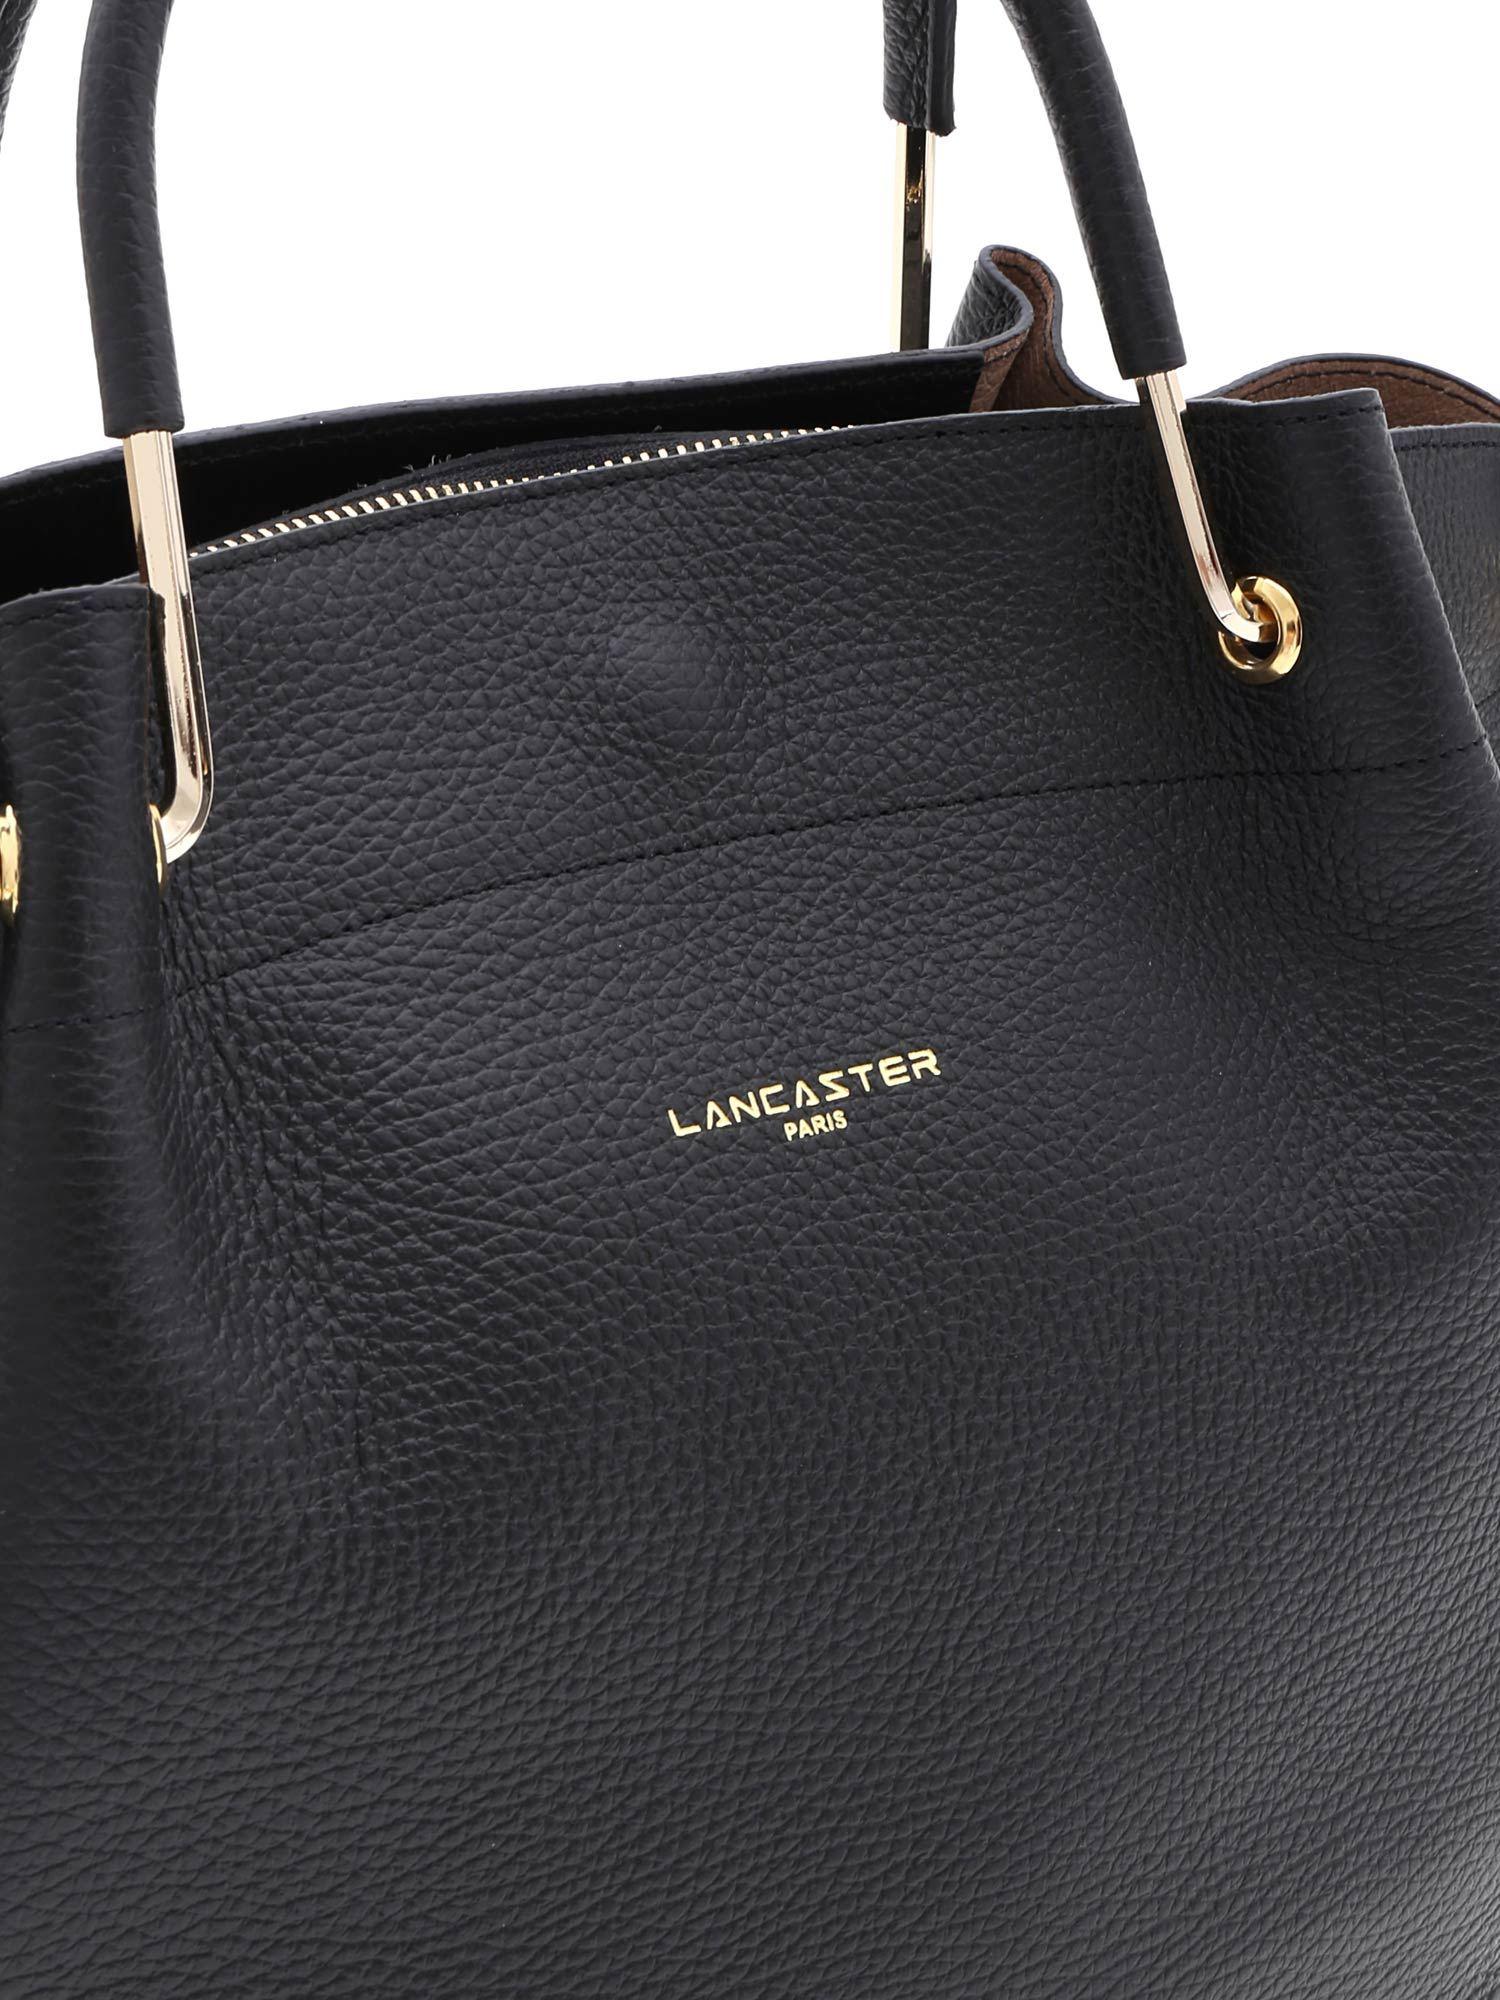 Lancaster Paris Leather Black Shoulder Bag With Golden Laminated Logo - Lyst